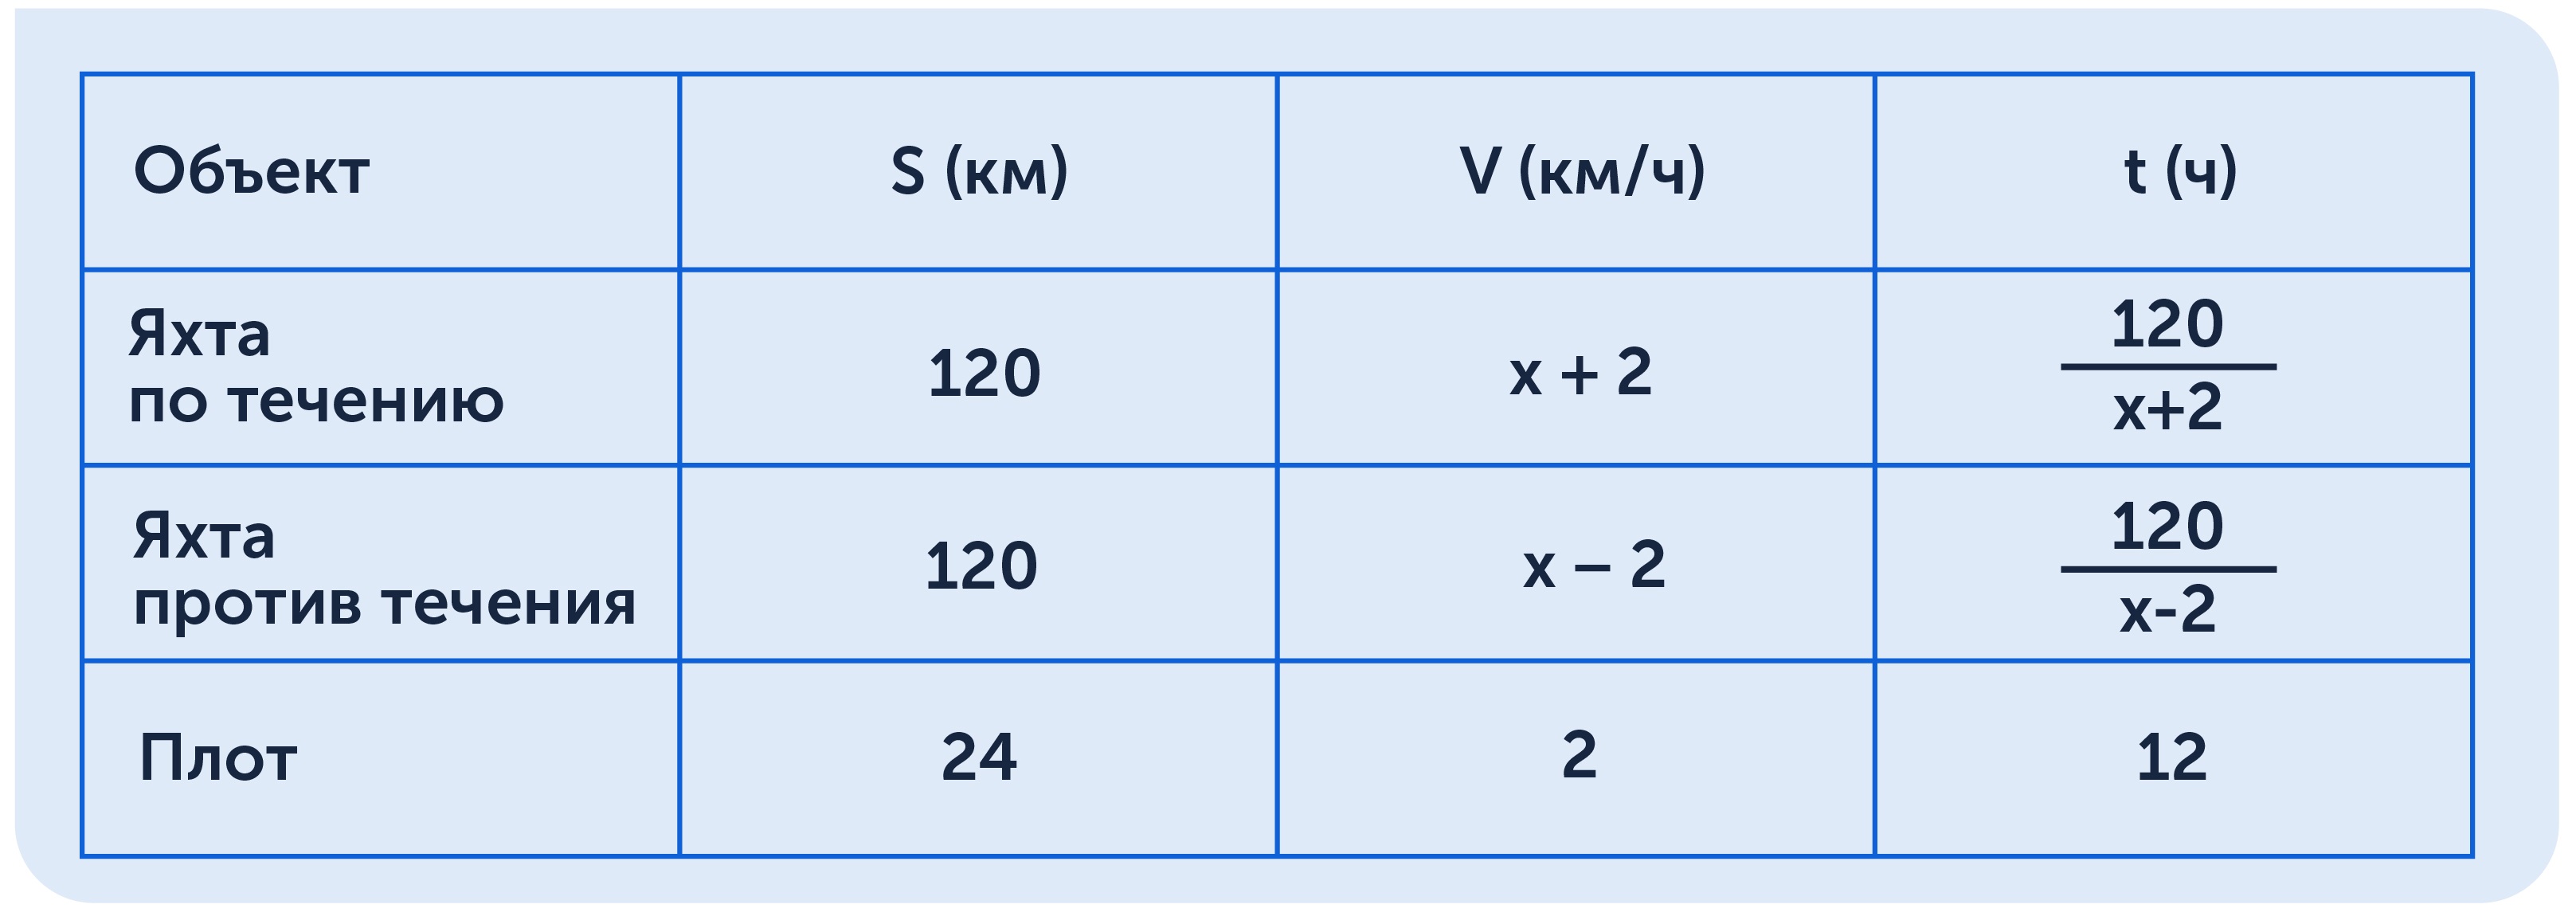 Решение текстовой задачи по математике в формате таблицы